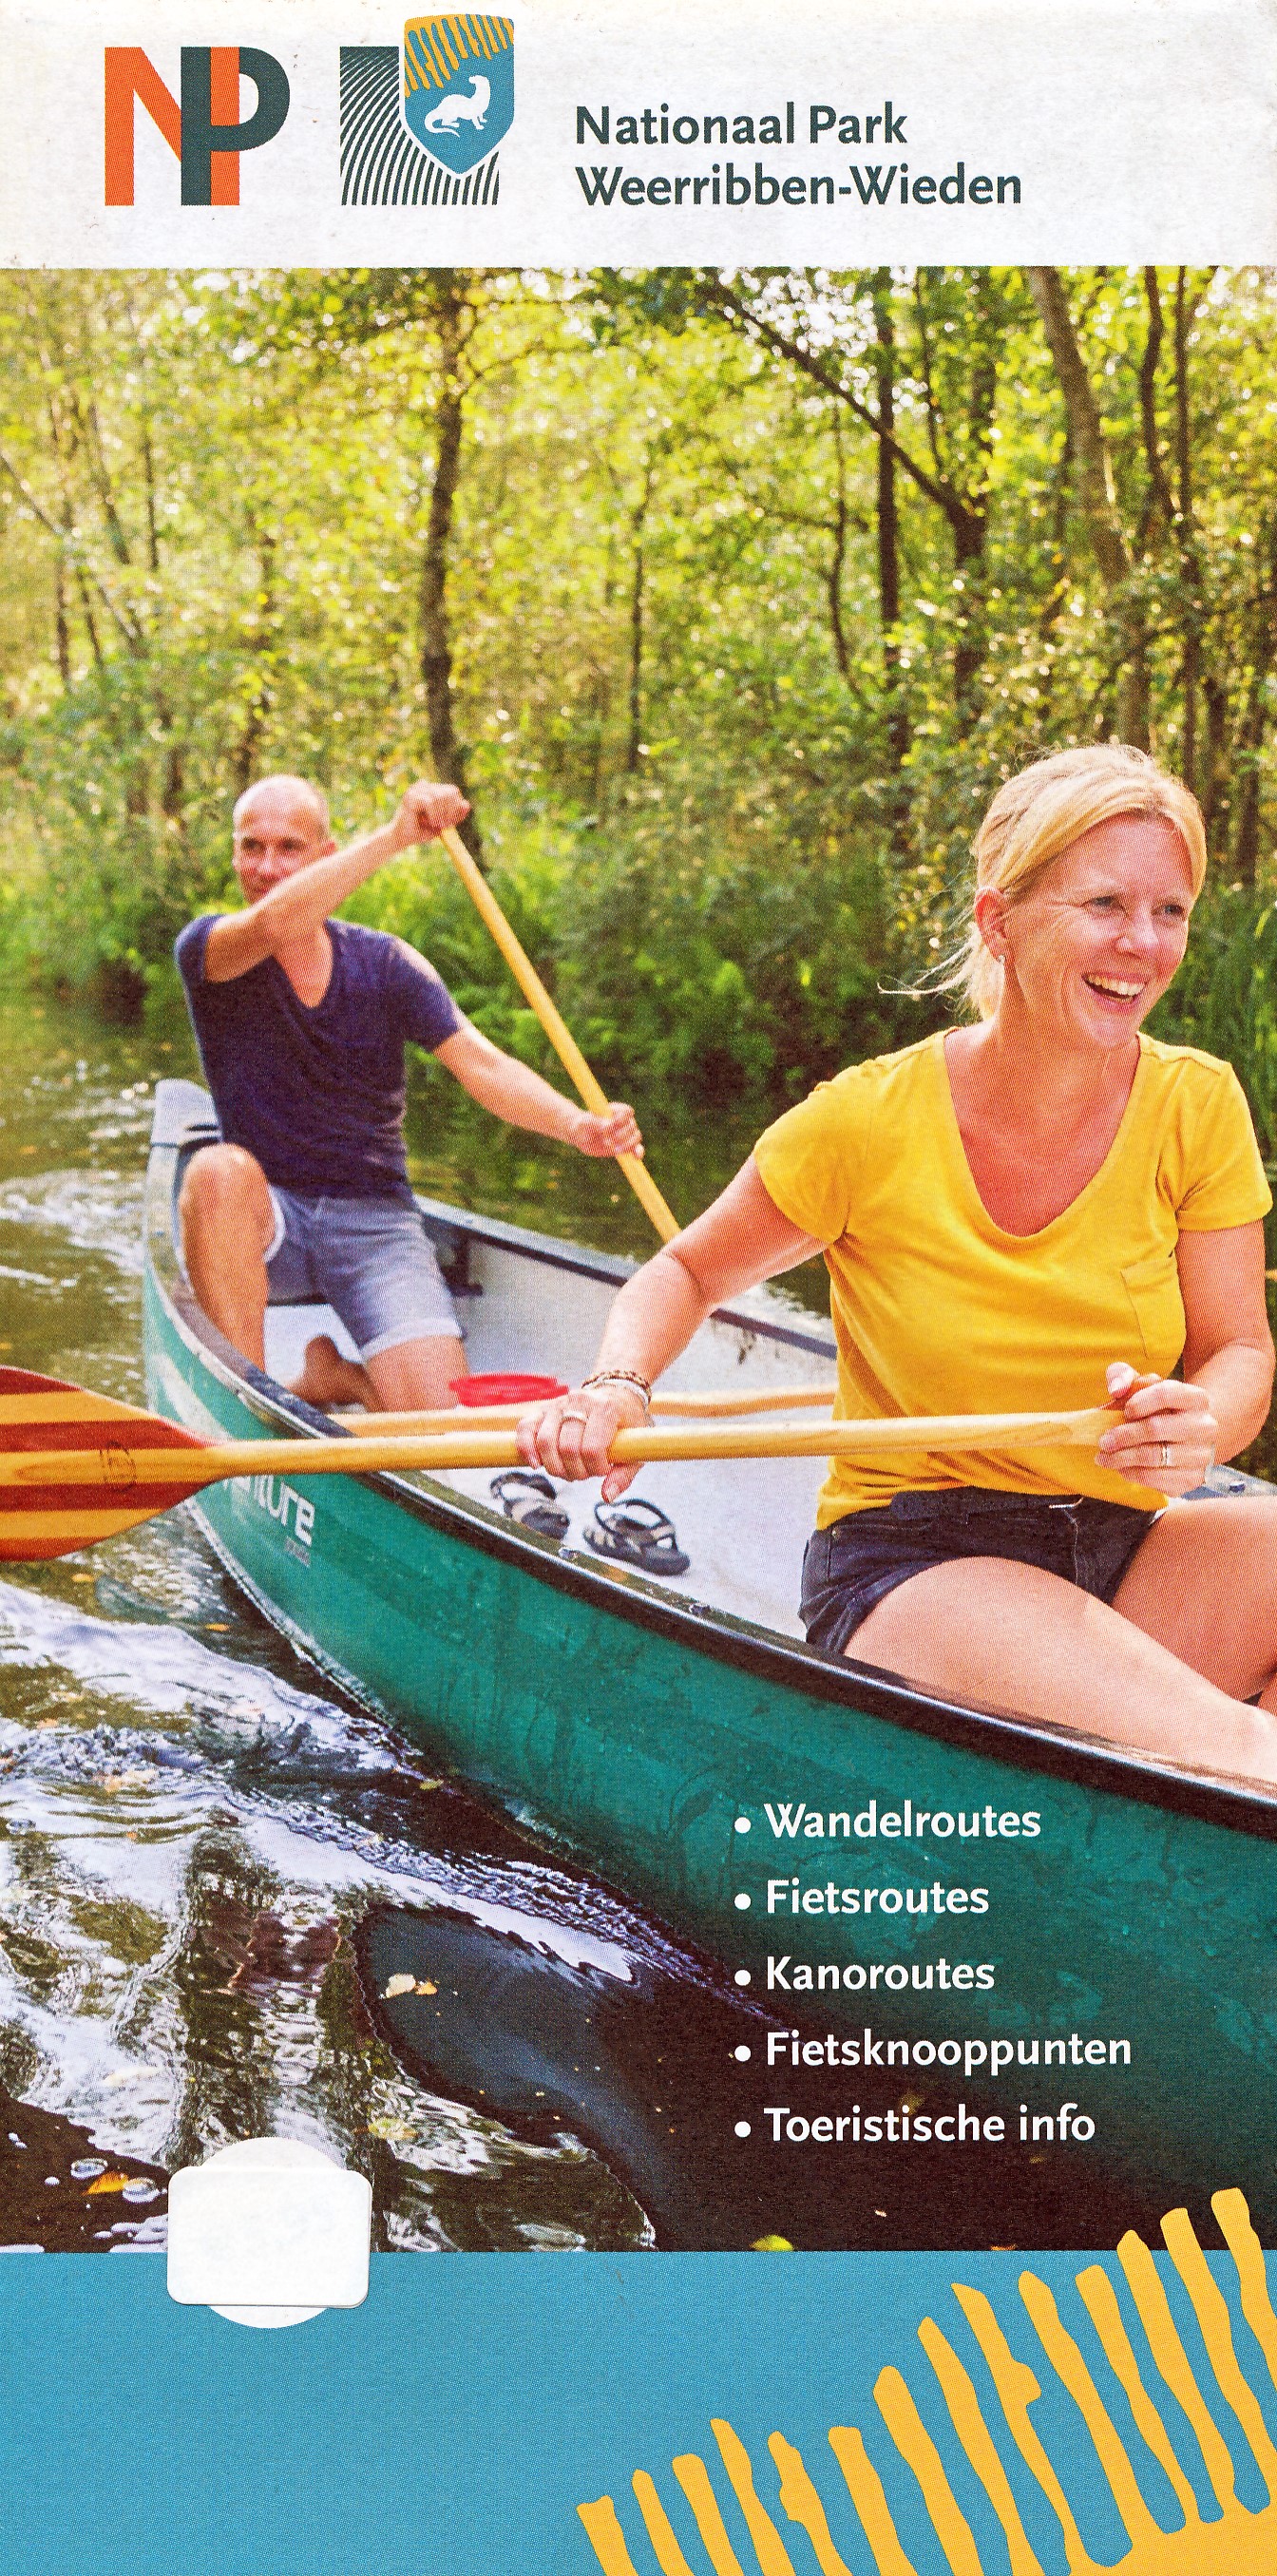 Online bestellen: Wandelkaart - Fietskaart - Waterkaart Weerribben - Wieden Nationaal Park | IVN